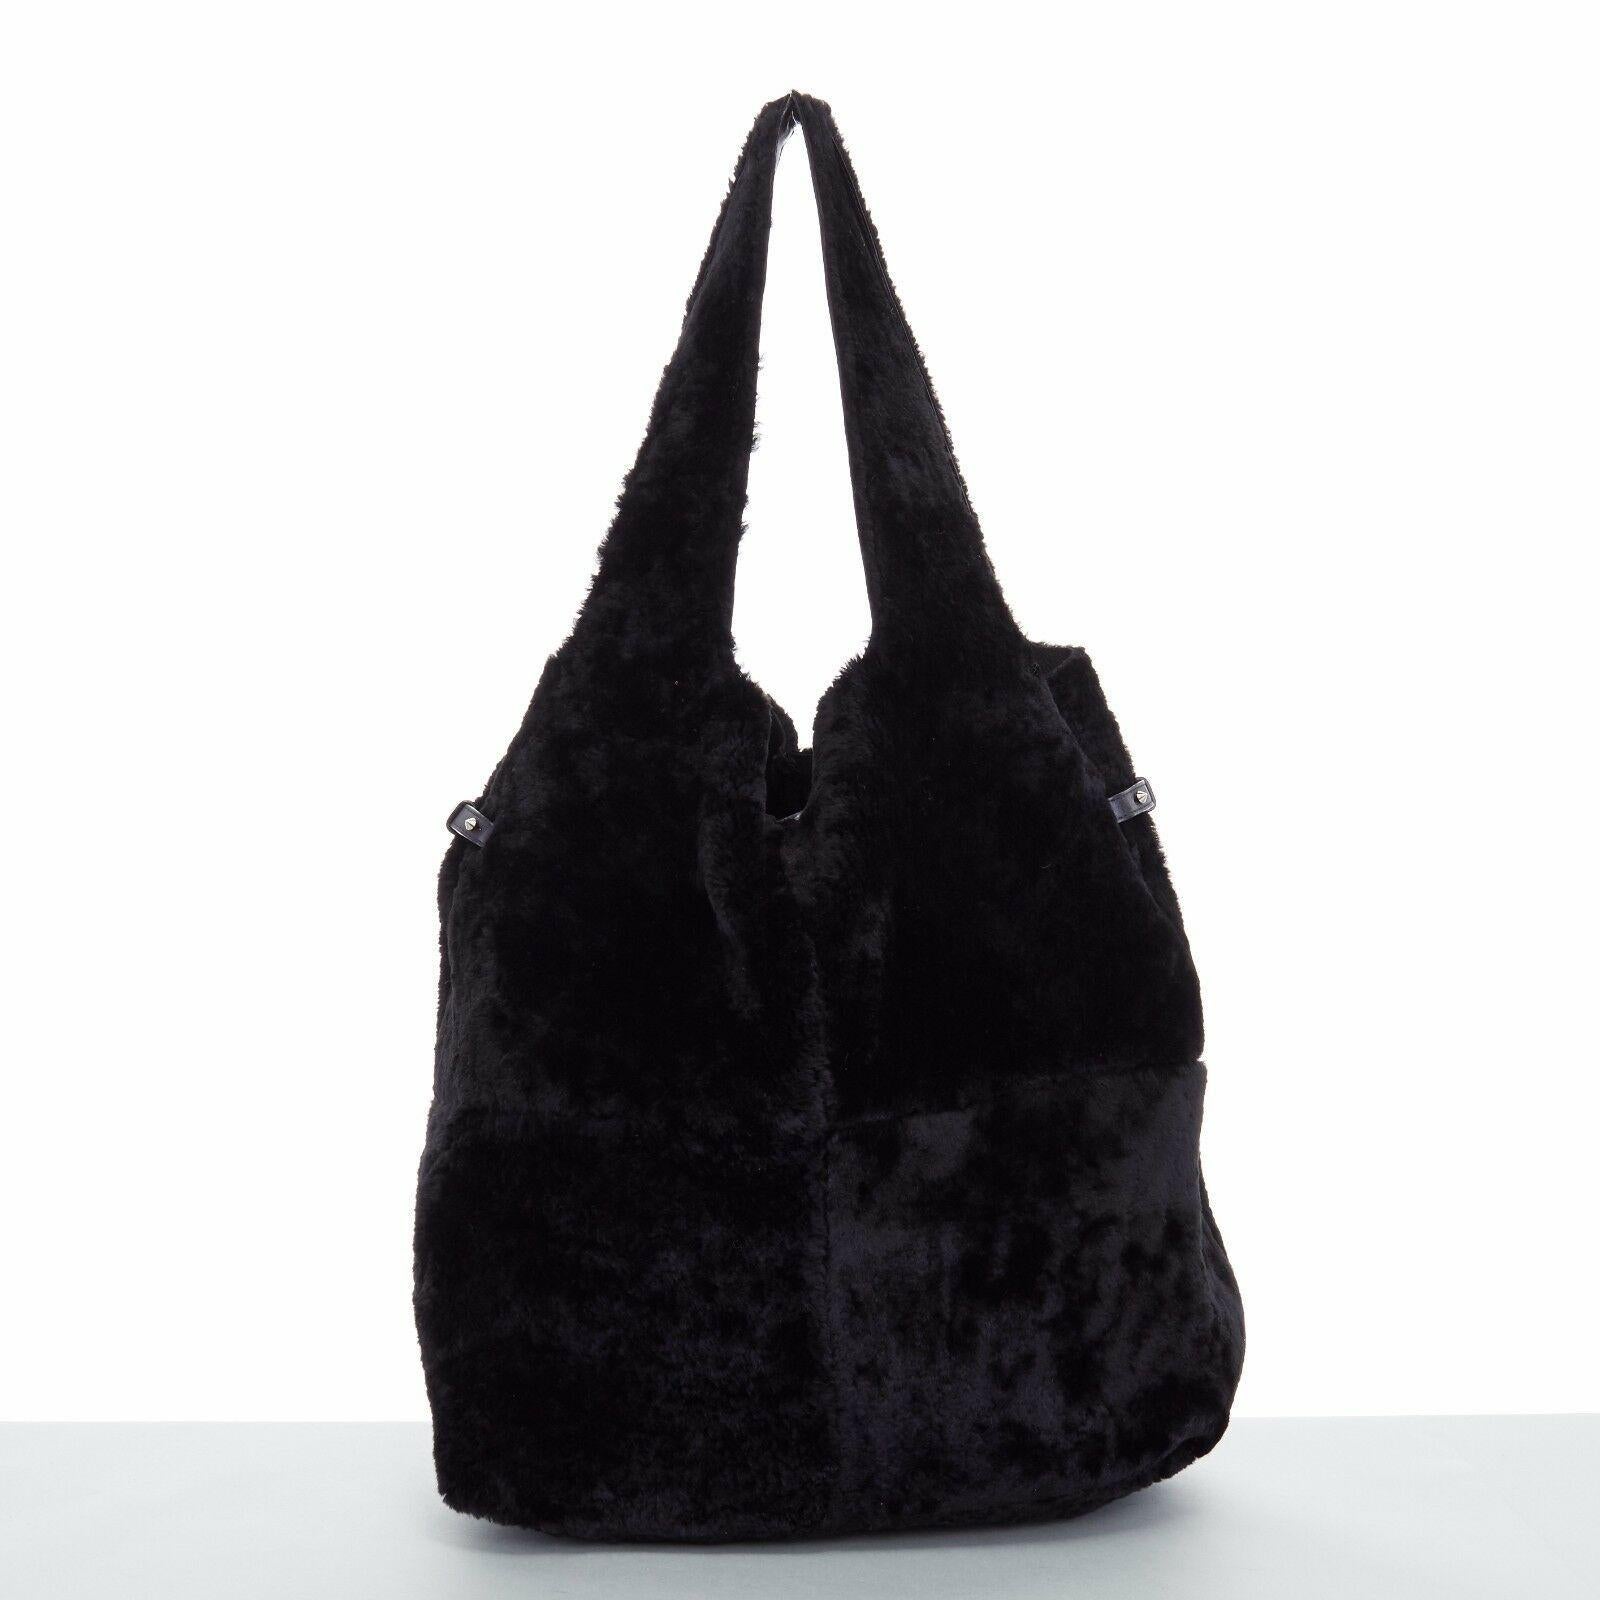 GIVENCHY TISCI black reversible leather shearling fur oversize hobo shoulder bag 2